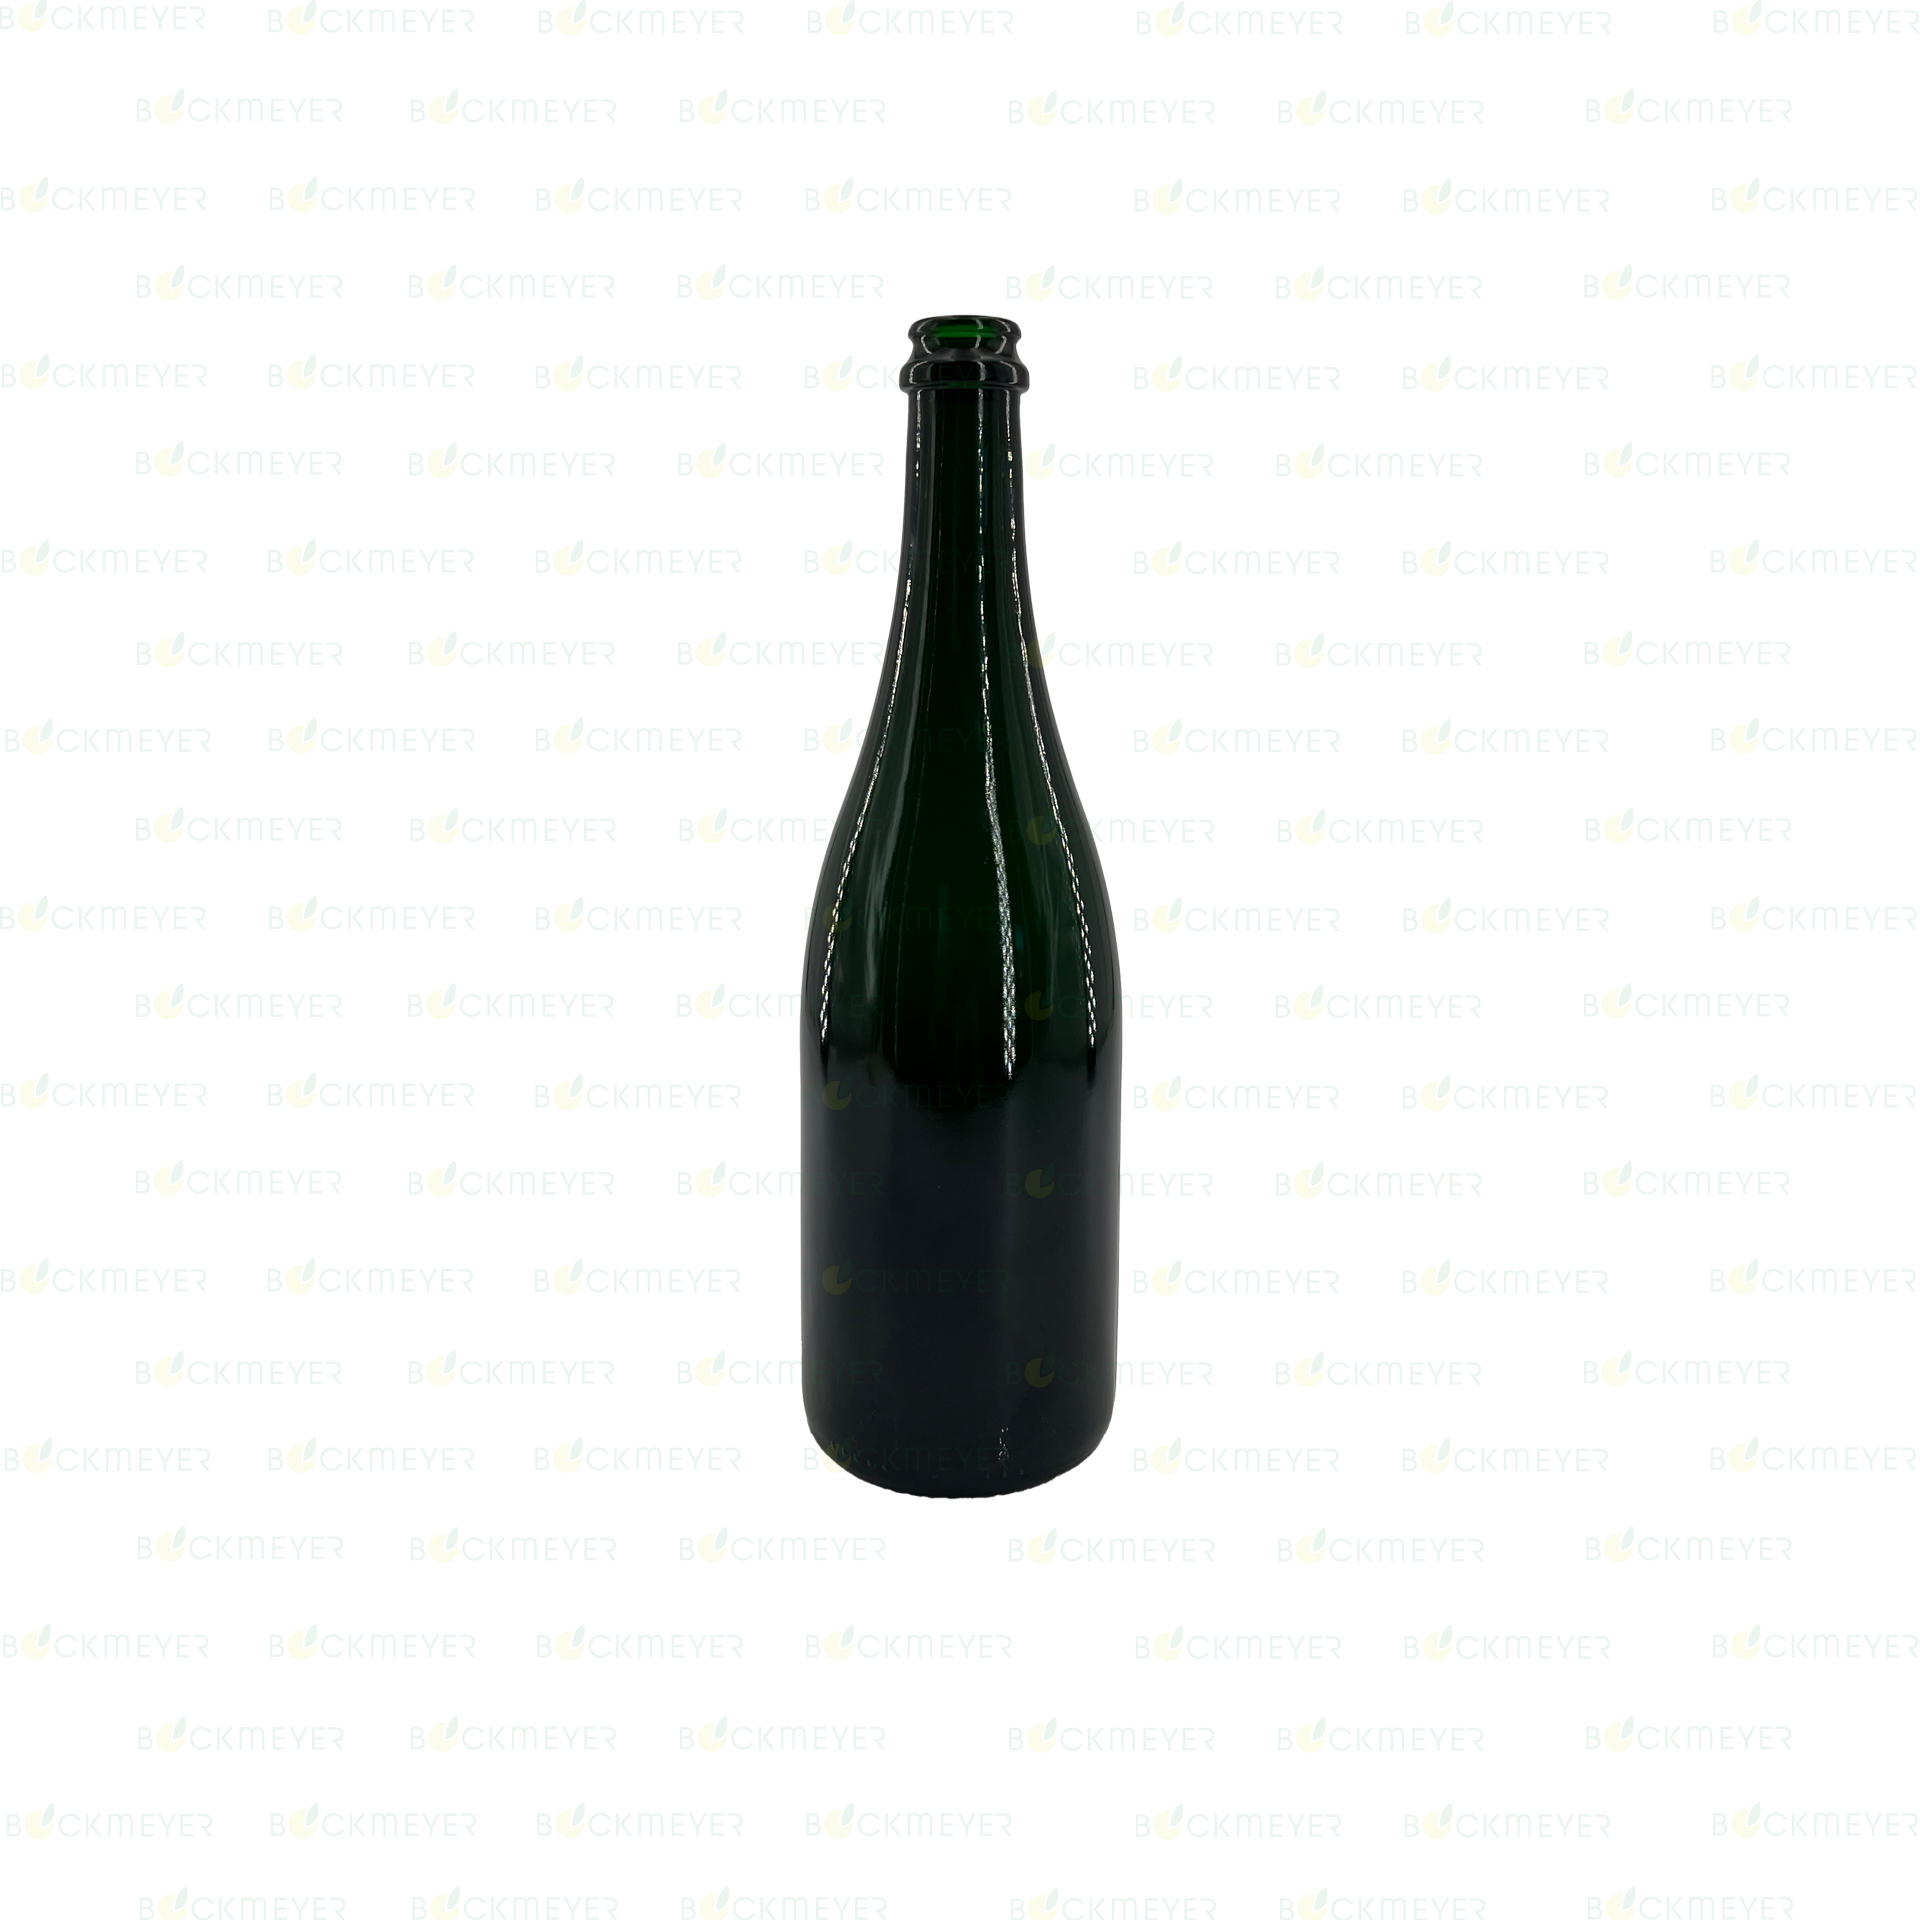 Sekt-Kronenkorkflasche 0,75 Liter, grün (OHNE VERSCHLUSS)